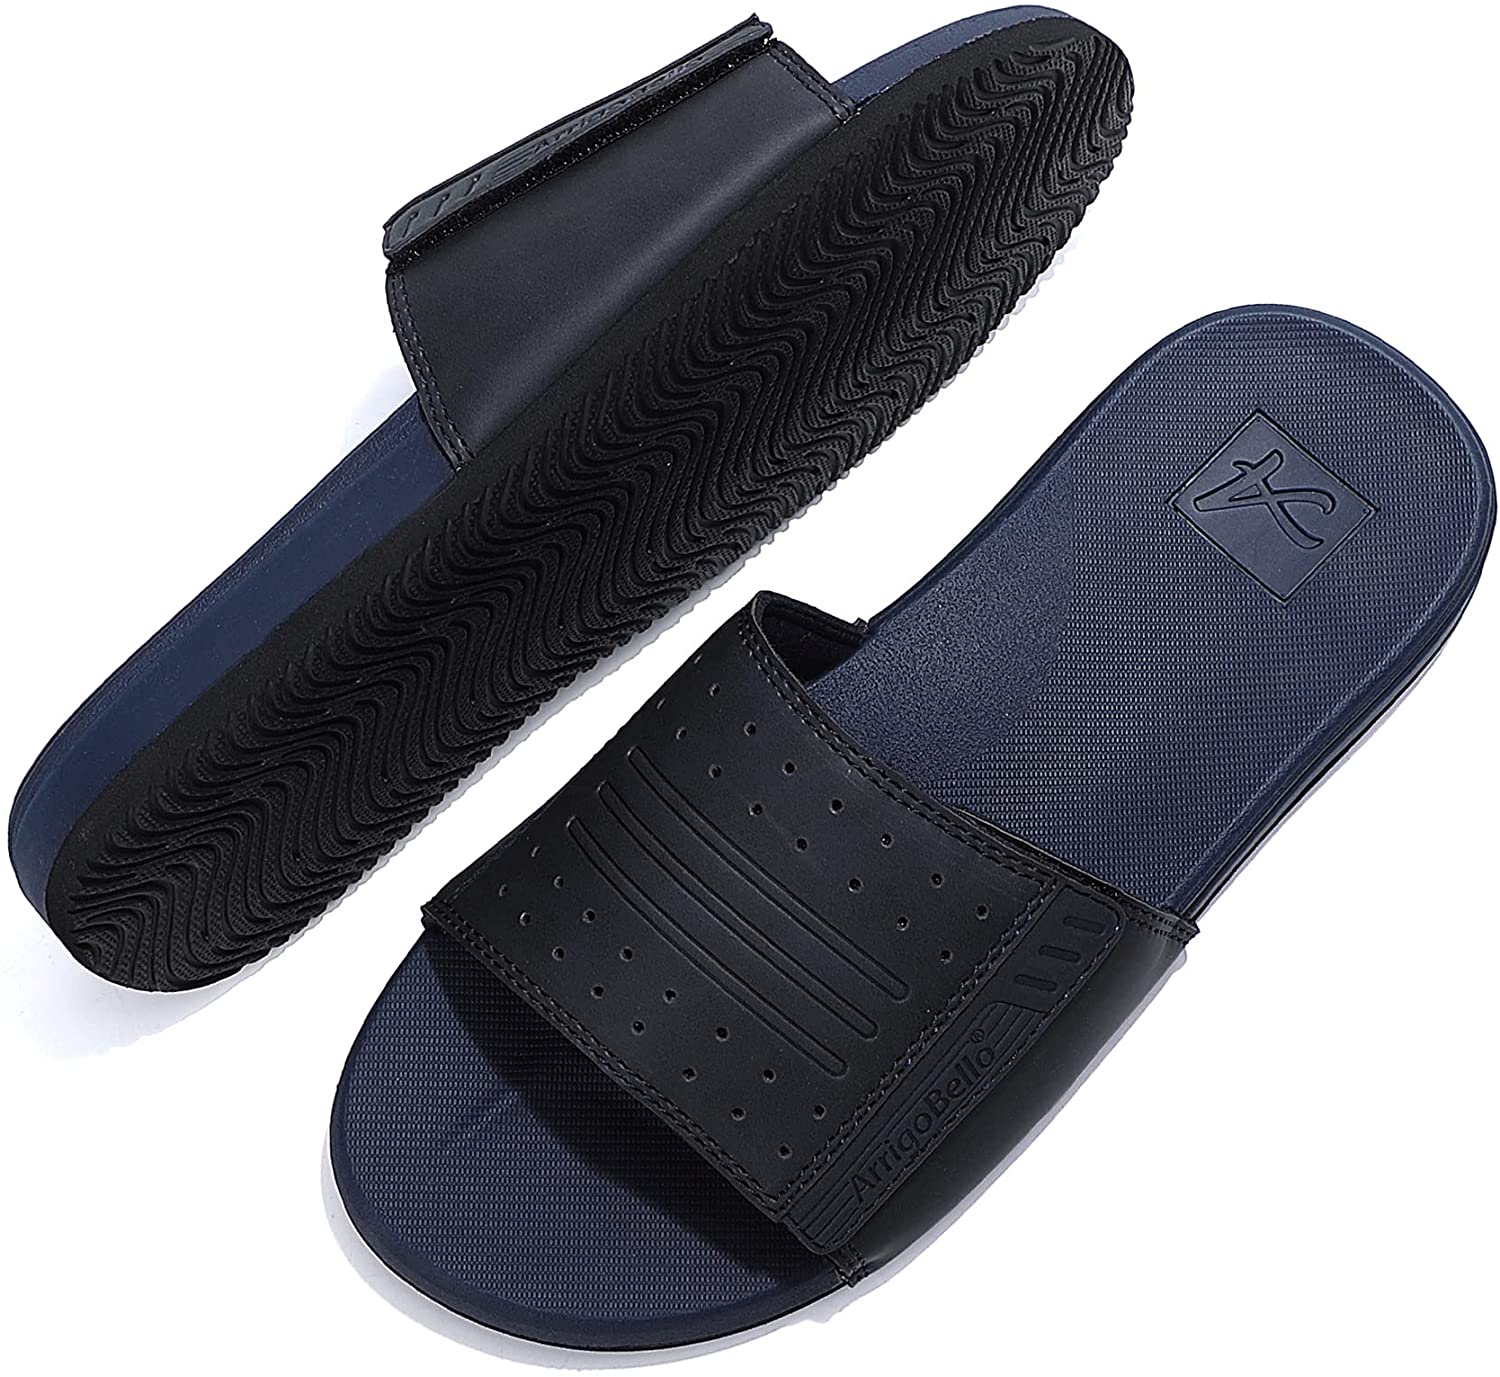 ARRIGO BELLO Sliders Mens Leather Flip Flops Non-Slip Summer sandals Hook&Loop/Latex Sole Soft Outdoor Classic Indoor Slippers Size 7-11UK 